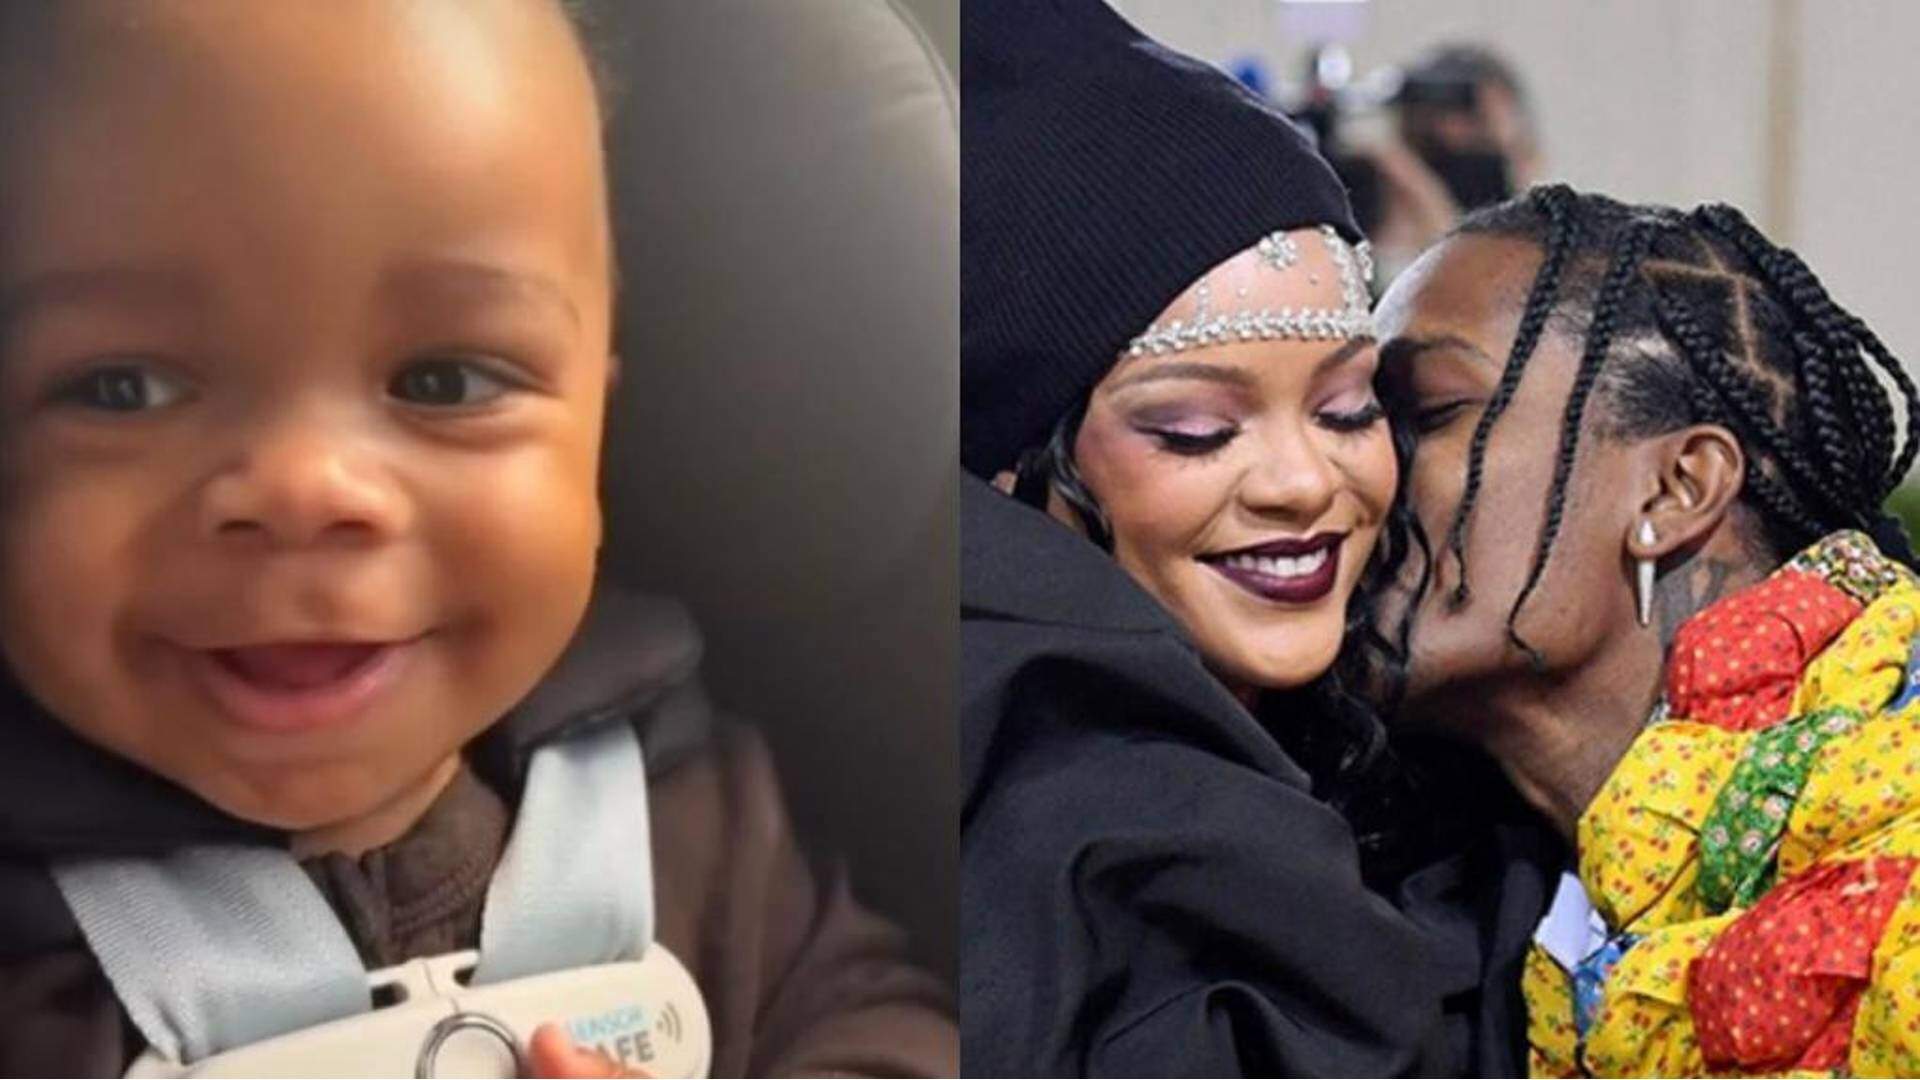 Em data especial, Rihanna compartilha álbum de sua família e detalhe rouba a cena nas fotos